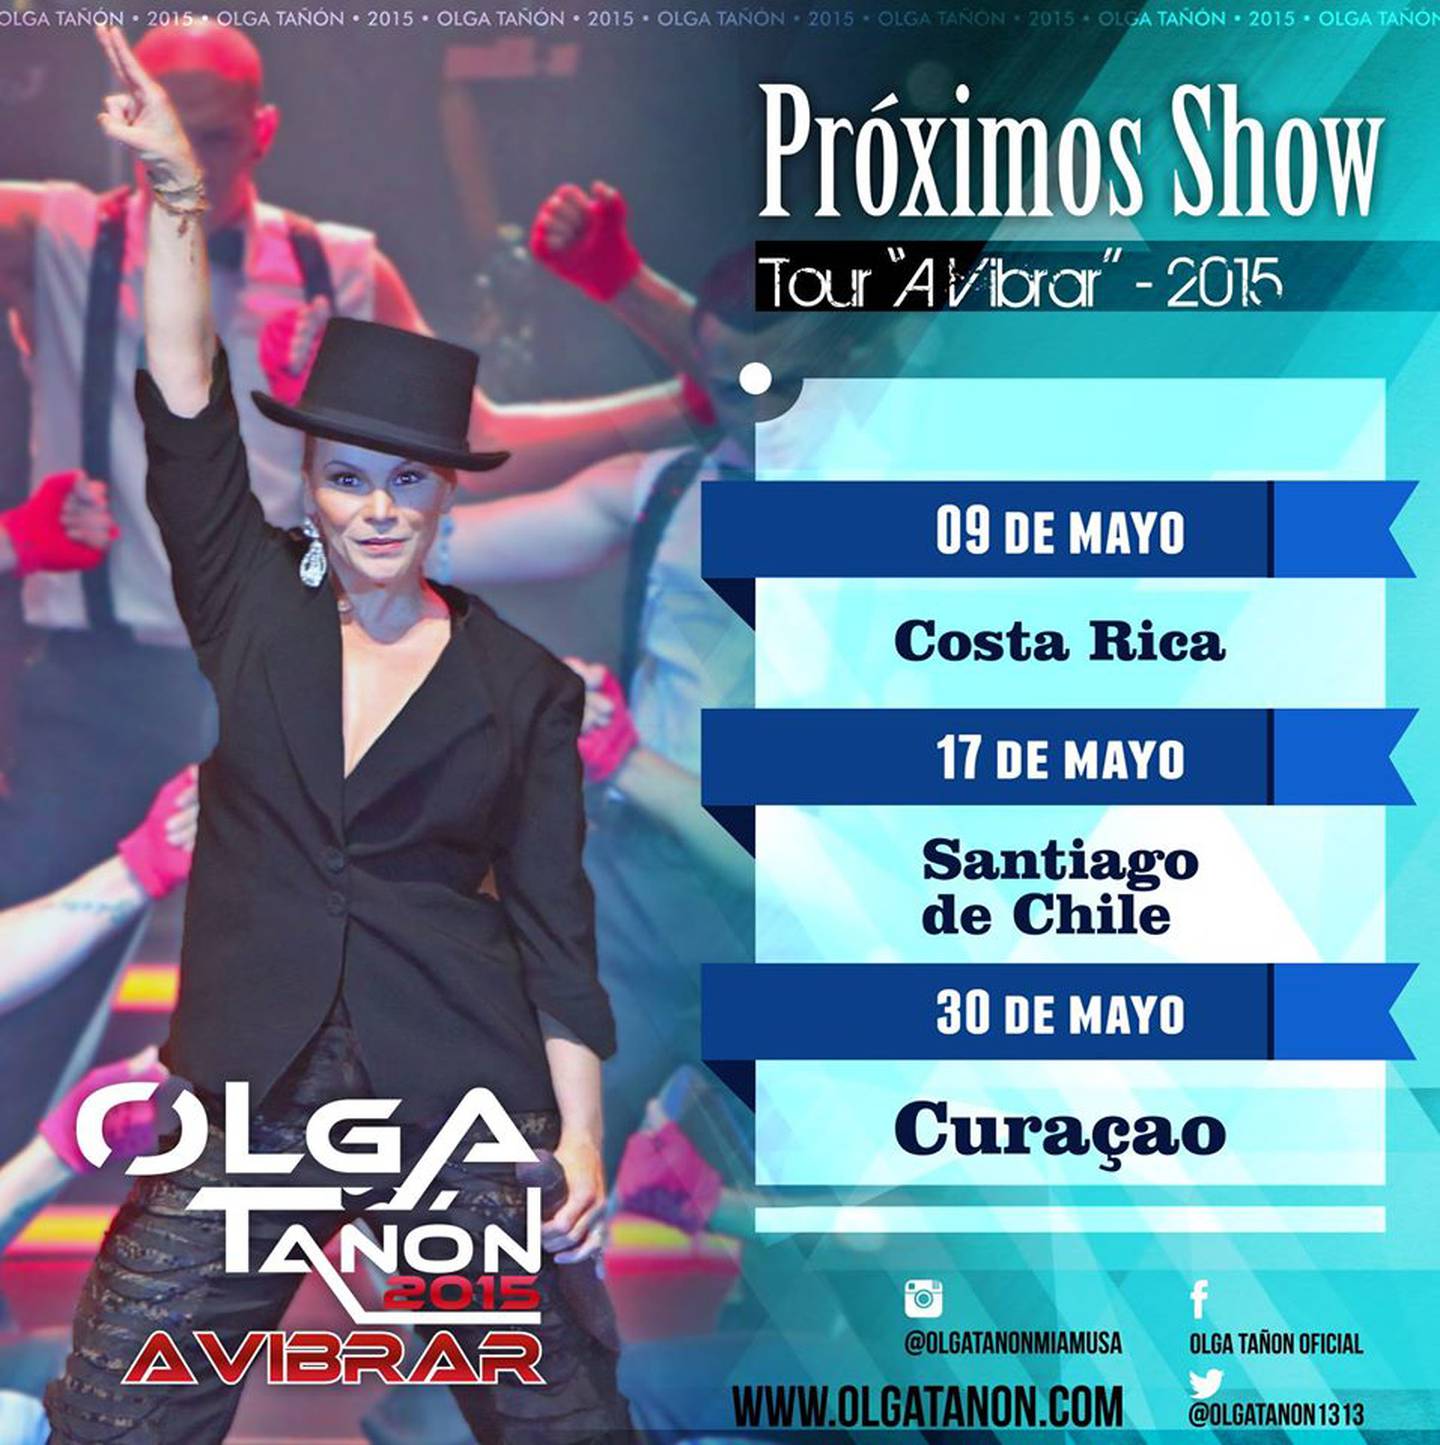 Olga Tañón dará concierto en Costa Rica el 9 de mayo La Nación